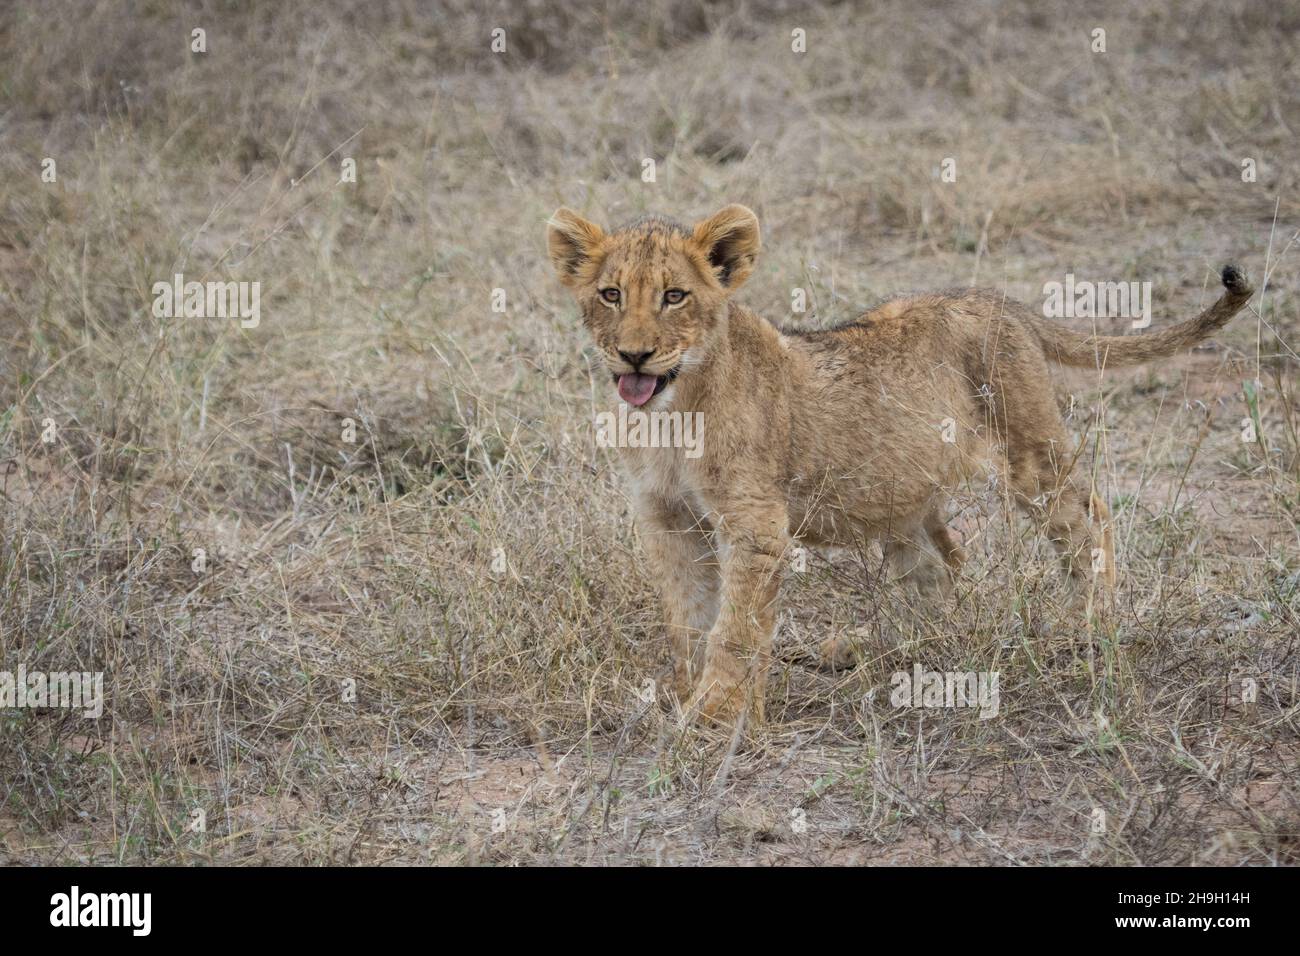 NIEDLICH! Ein junges Löwenjunges, das im trockenen Gras steht, Greater Kruger. Stockfoto